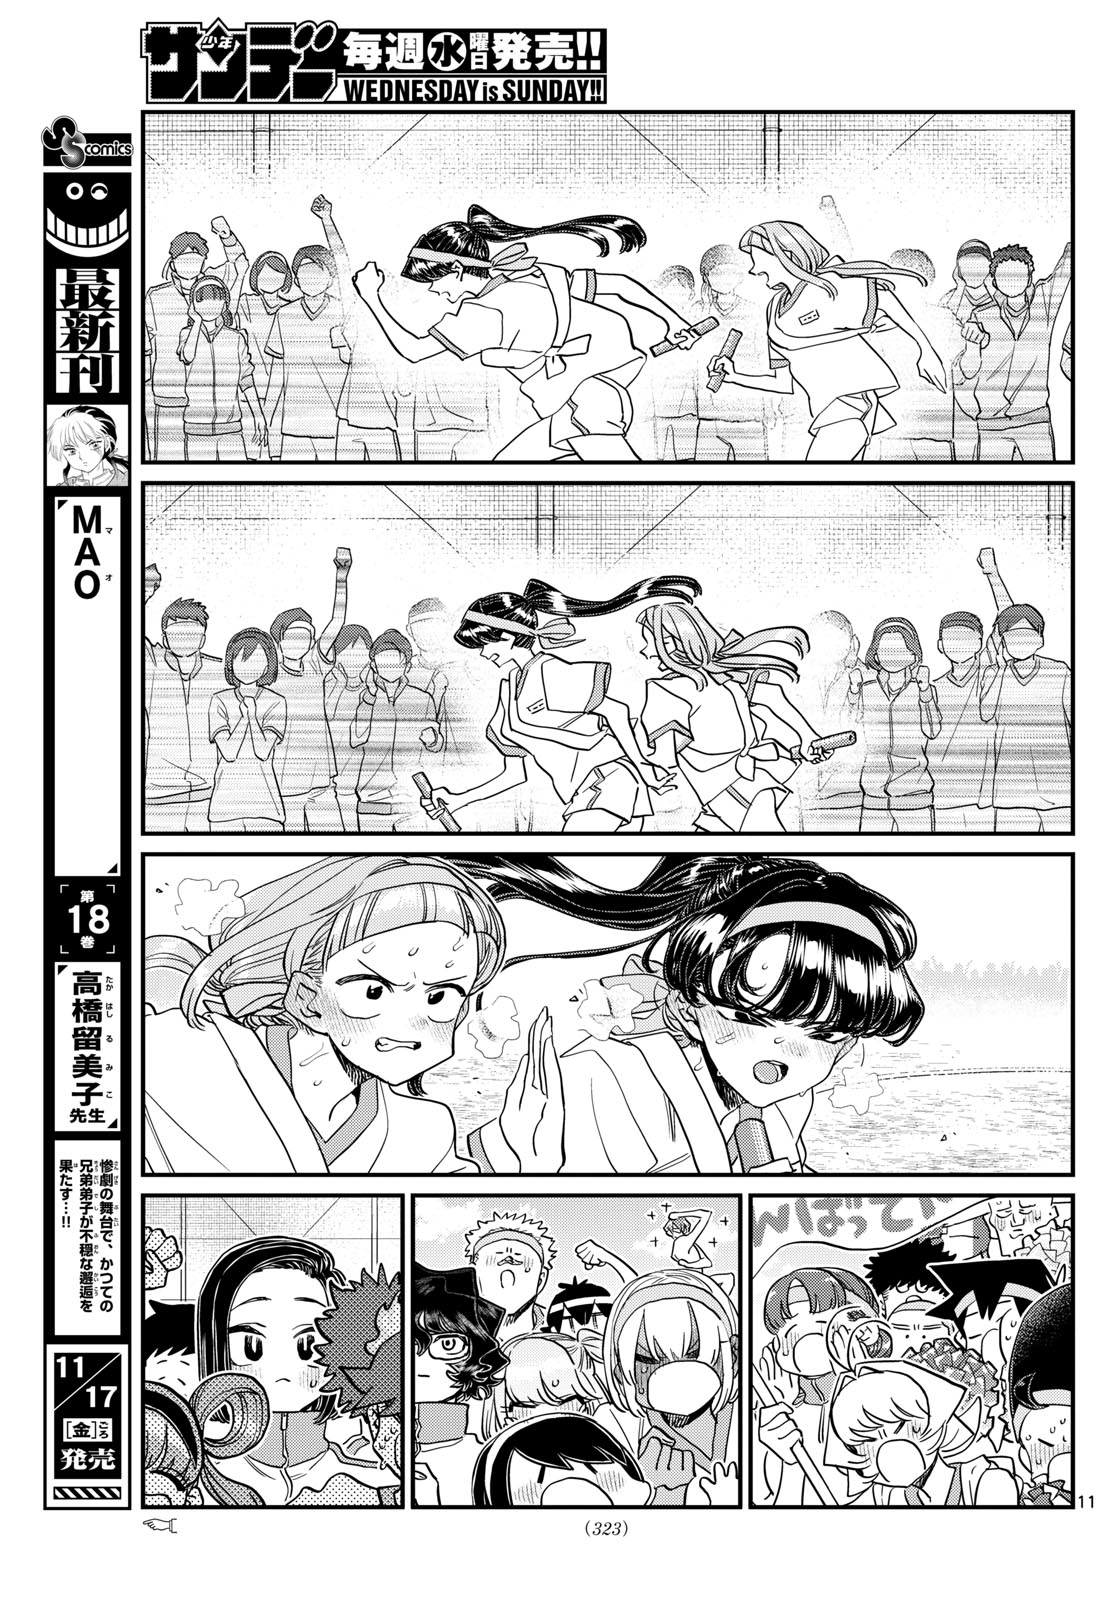 Komi-san wa Komyushou Desu - Chapter 431 - Page 11